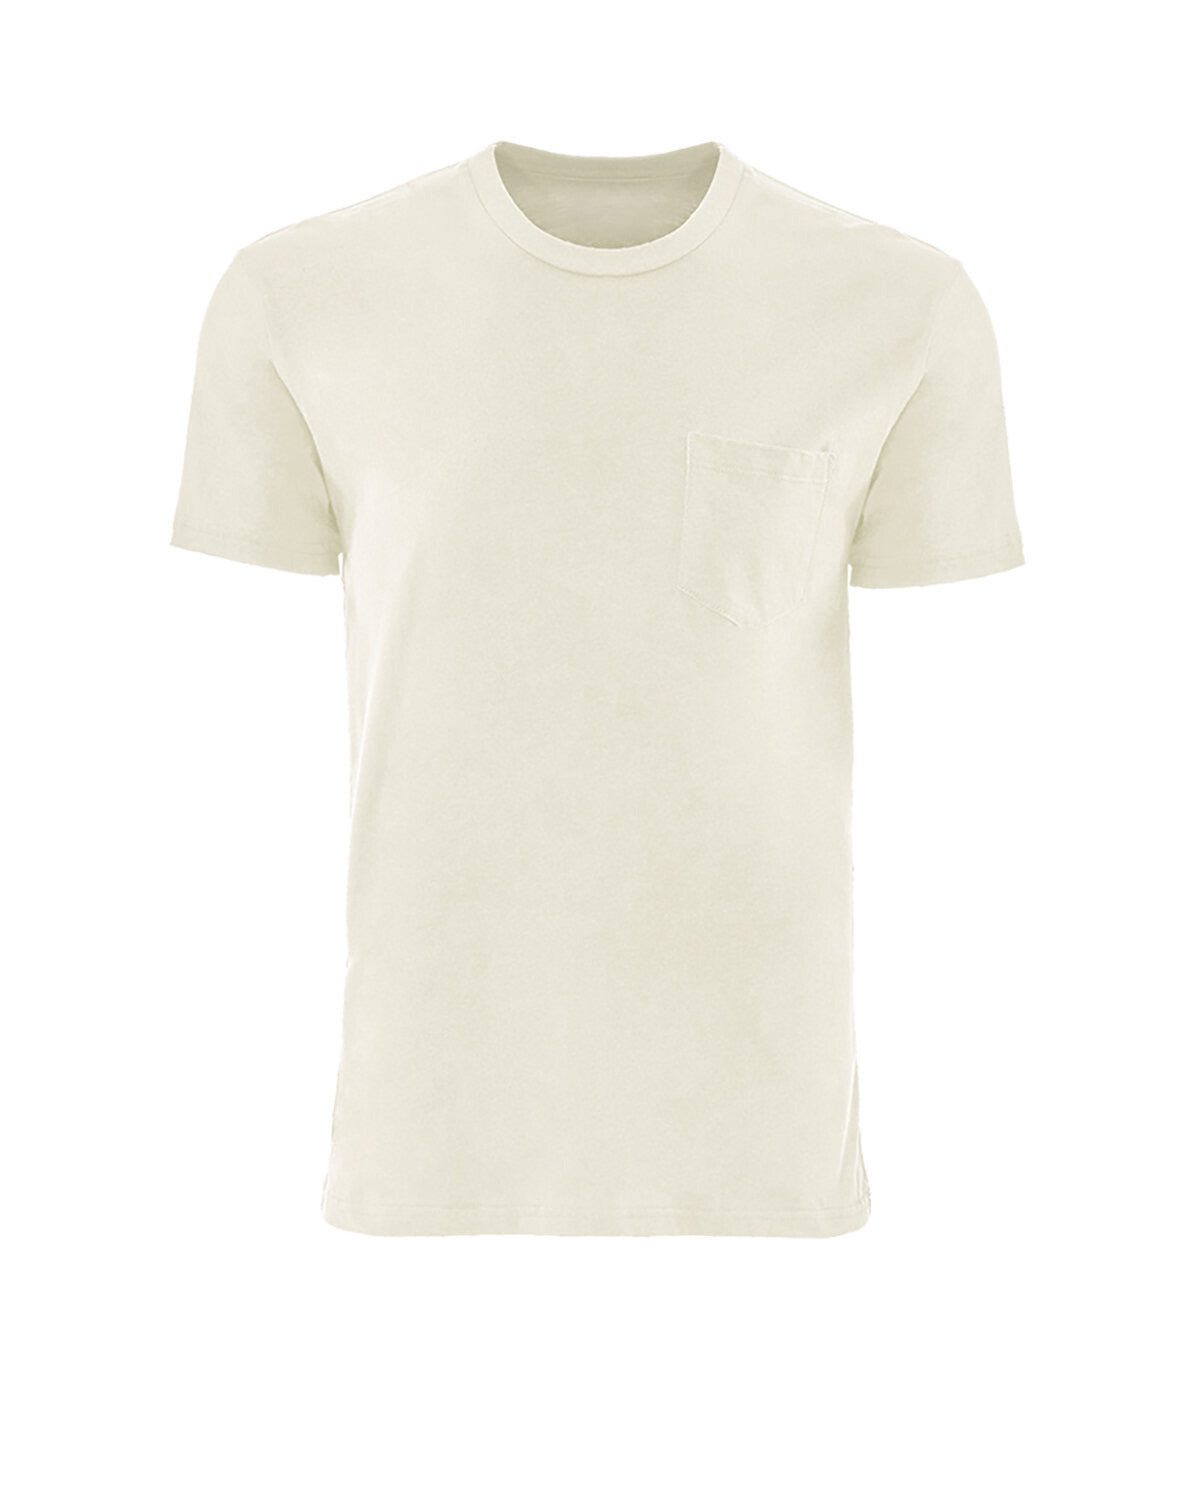 UNISEX Pocket T-Shirt